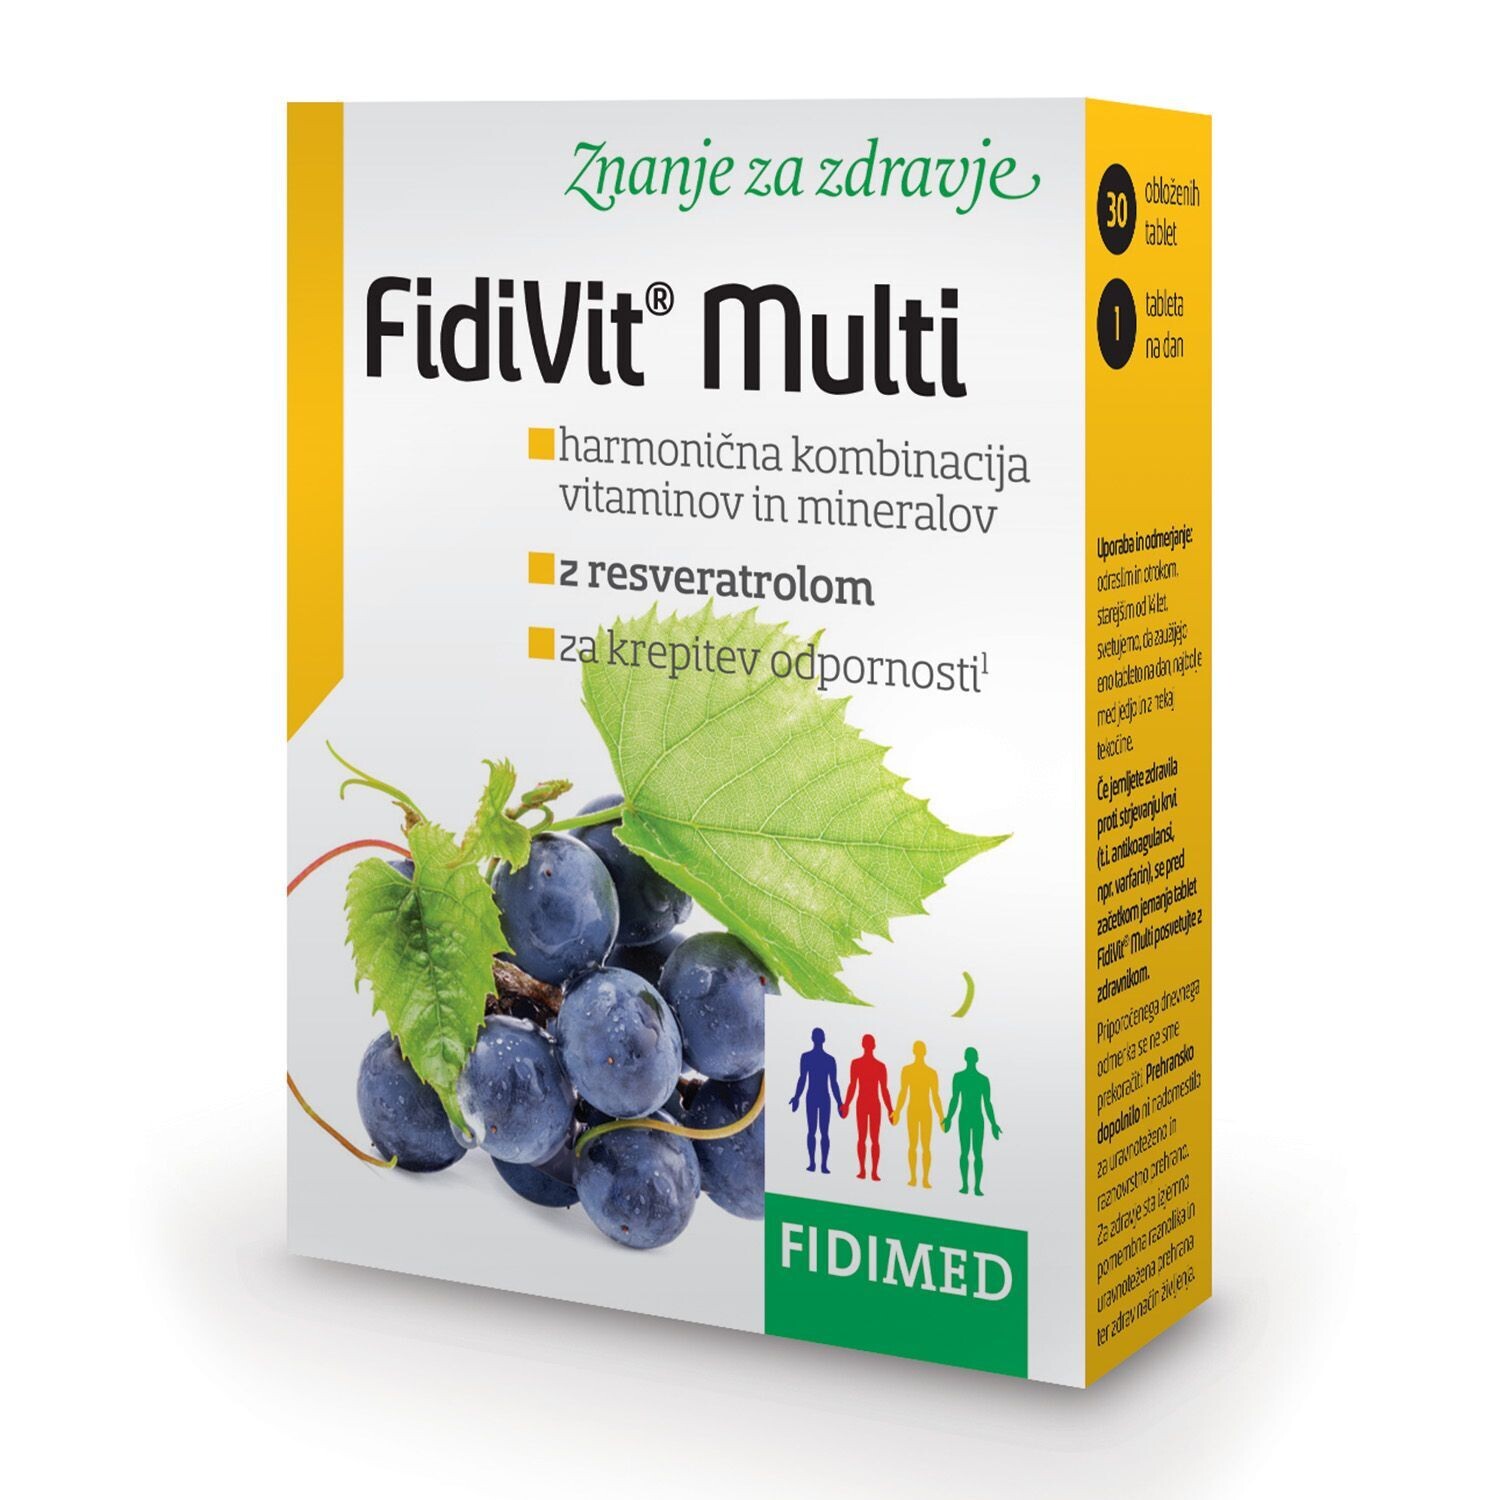 FidiVit® Multi